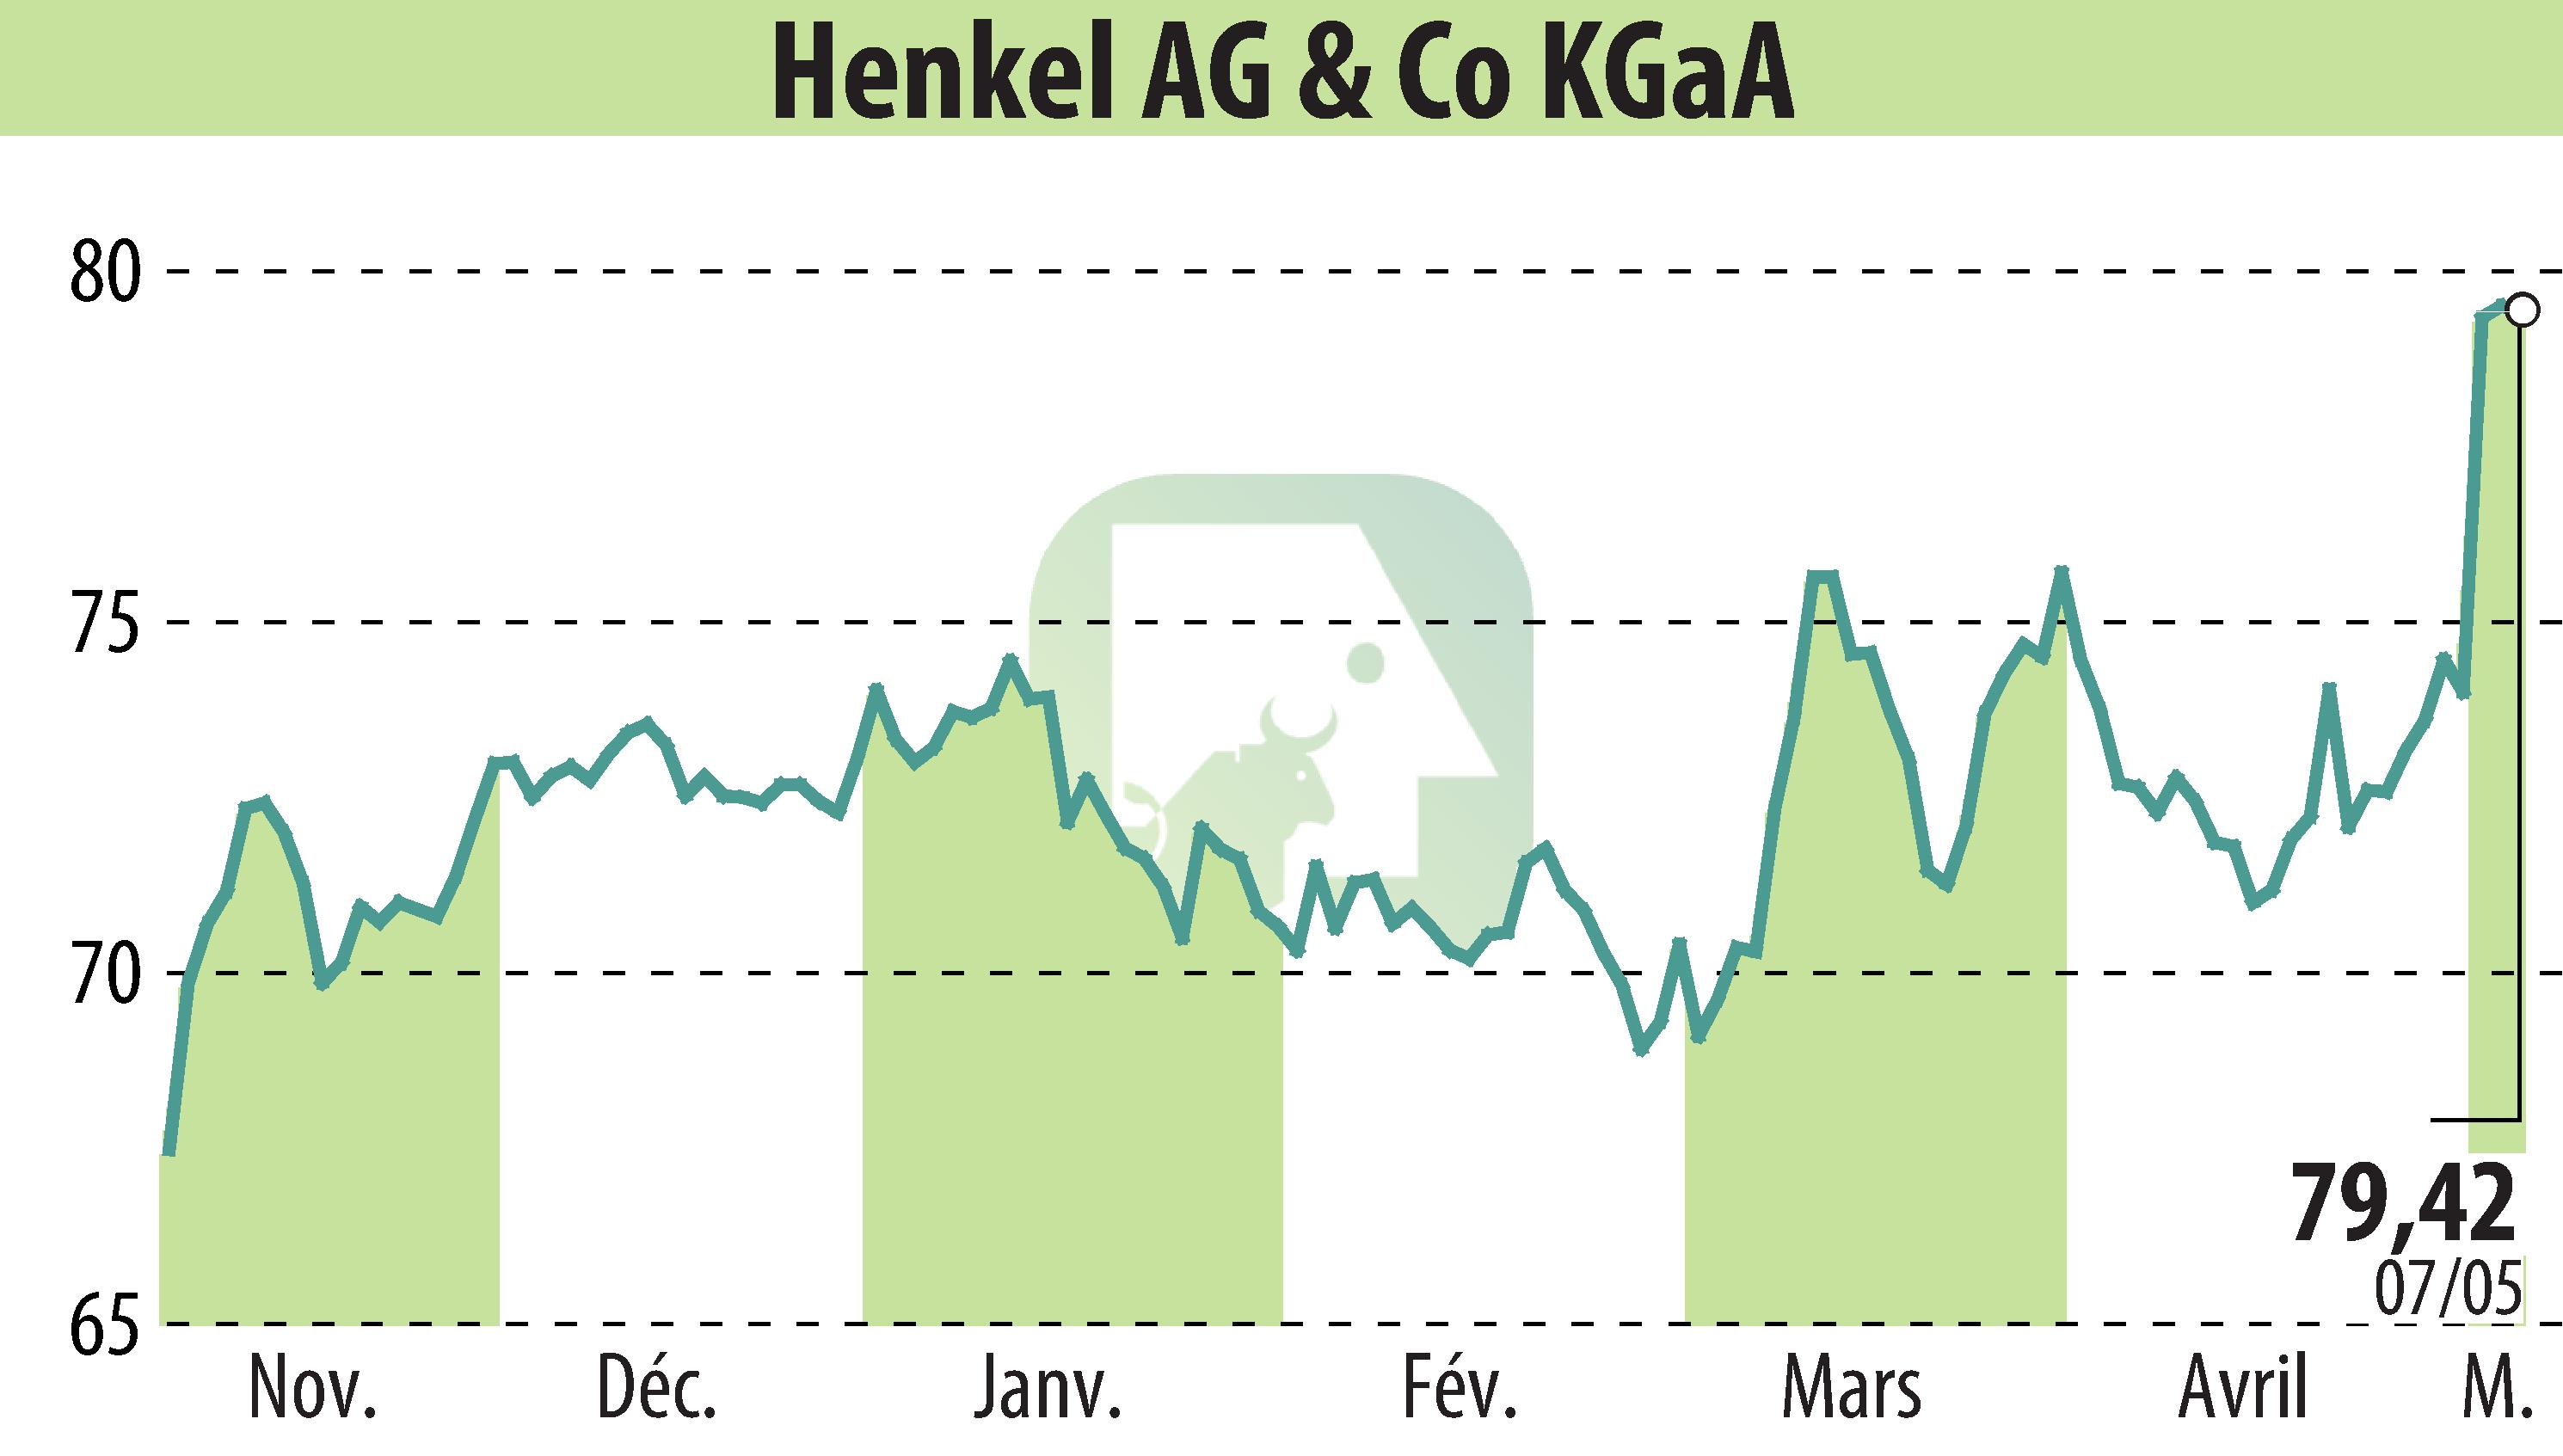 Stock price chart of Henkel KGaA (EBR:HEN3) showing fluctuations.